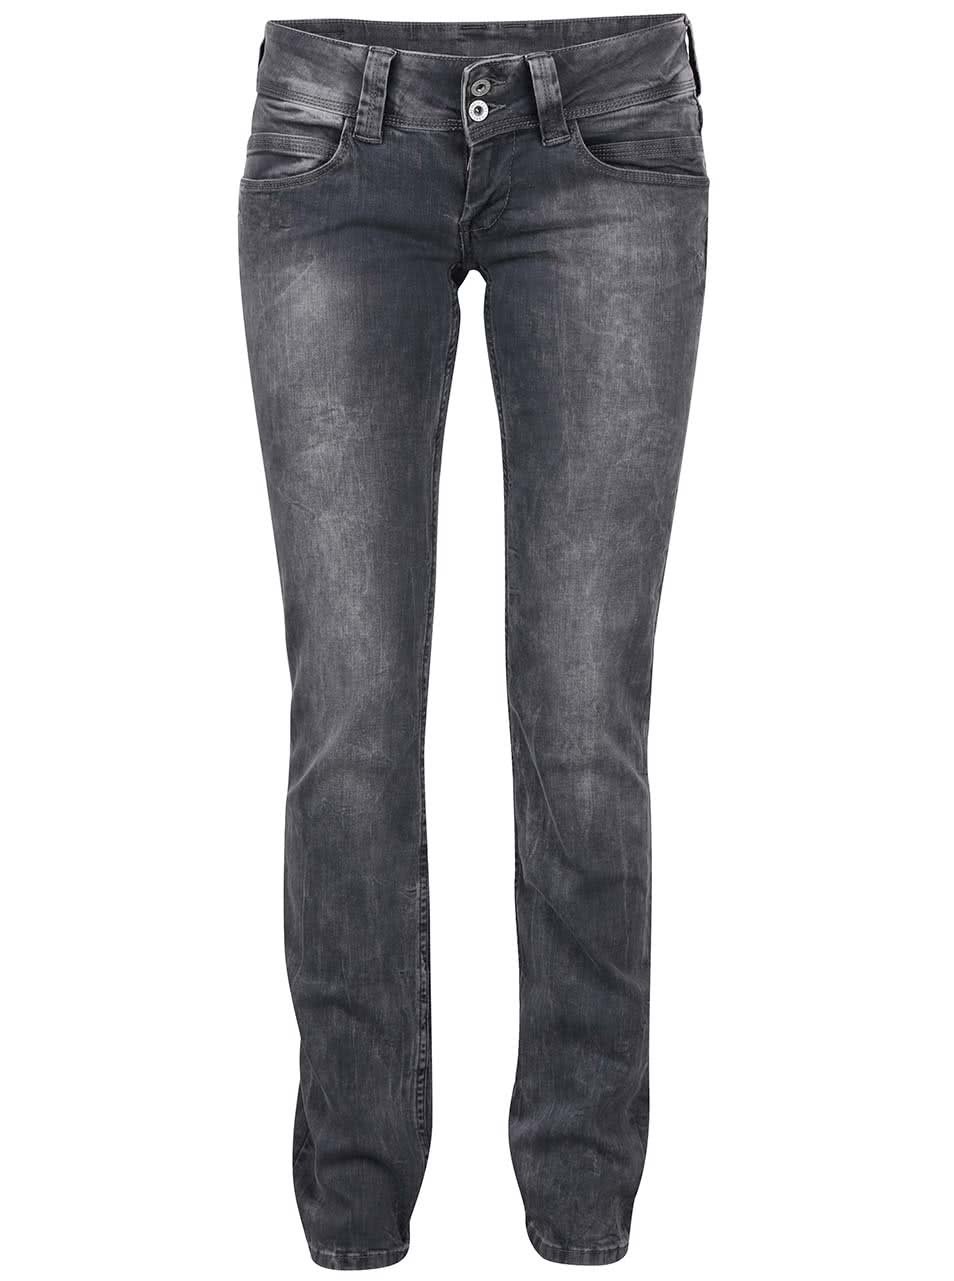 Šedé dámské regular fit džíny s nízkým pasem Pepe Jeans Venus